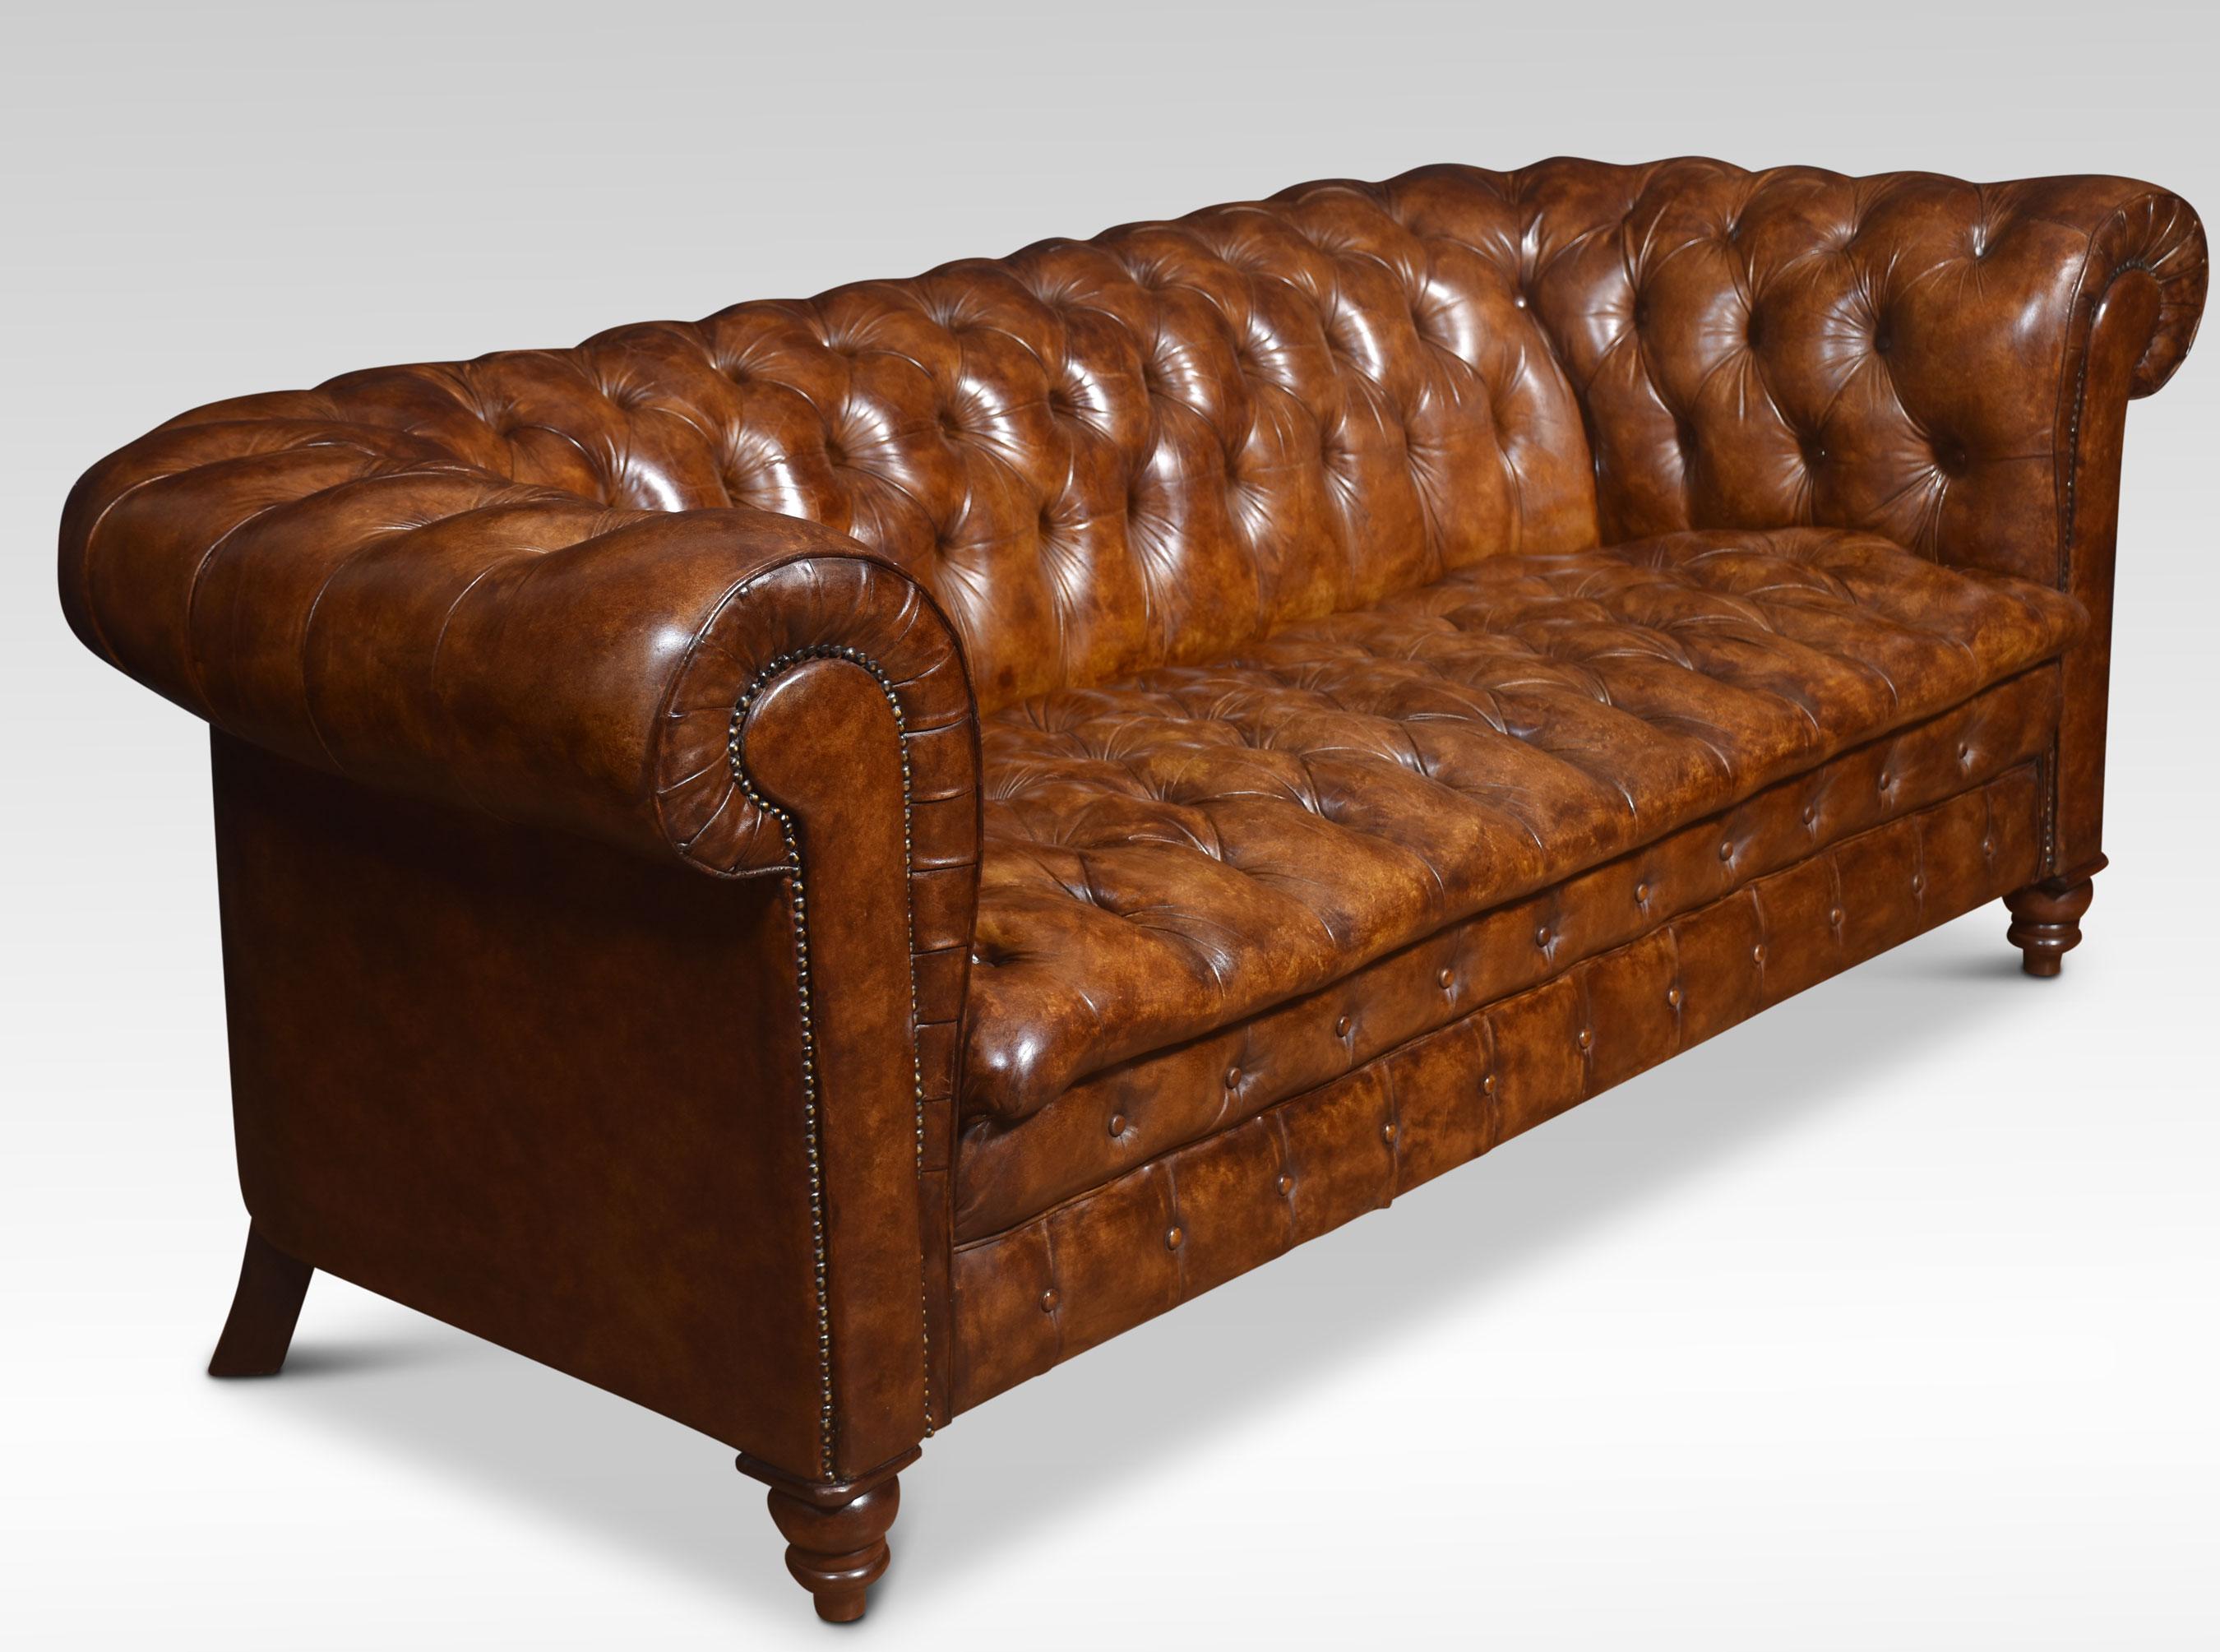 Grand canapé Chesterfield en cuir marron, avec dossier et assise profondément boutonnés, le tout reposant sur des pieds tournés. Bon état de conservation, le cuir est souple et joliment usé.
Dimensions
Hauteur 31 pouces Hauteur de l'assise 18